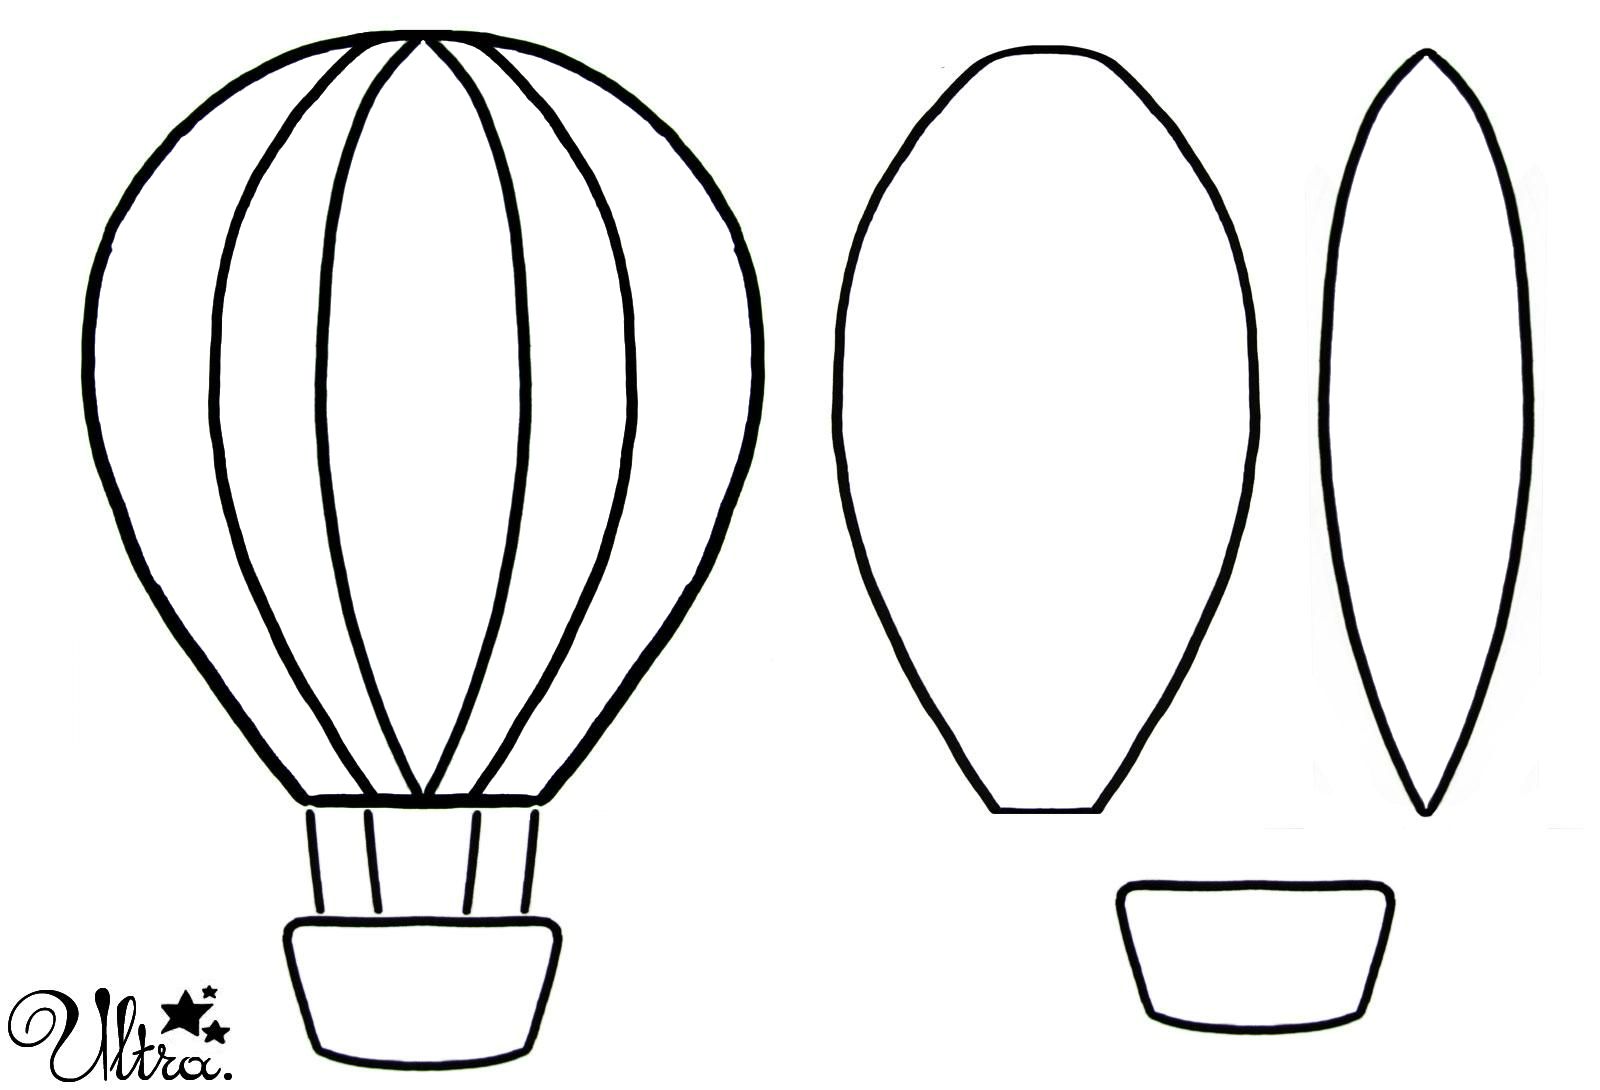 Шаблон воздушного шара для вырезания: Шаблоны для вырезания воздушных шаров